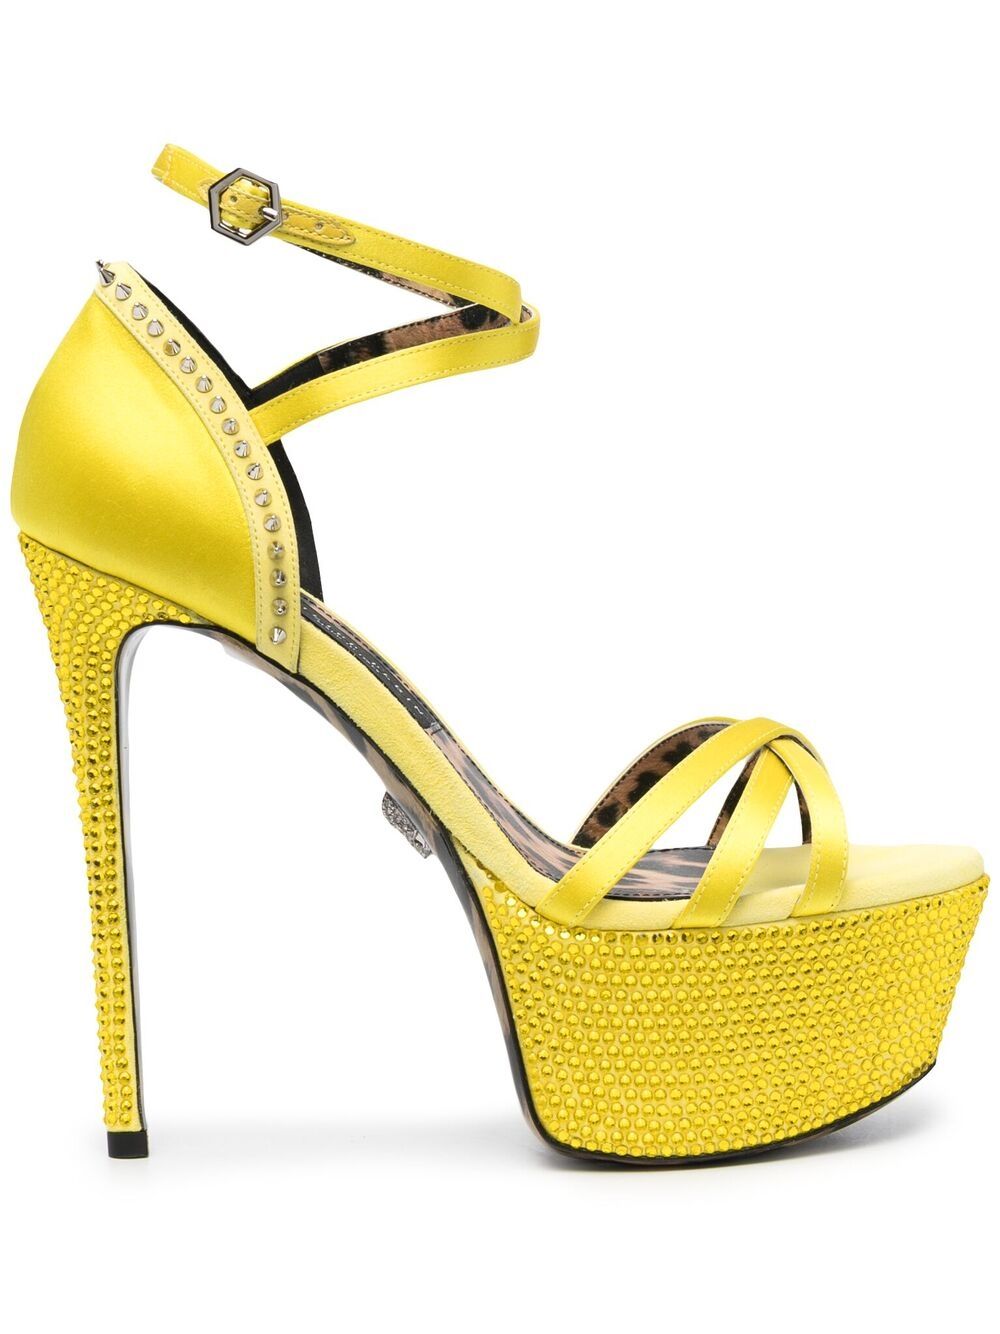 Philipp Plein embellished satin platform sandals - Yellow von Philipp Plein